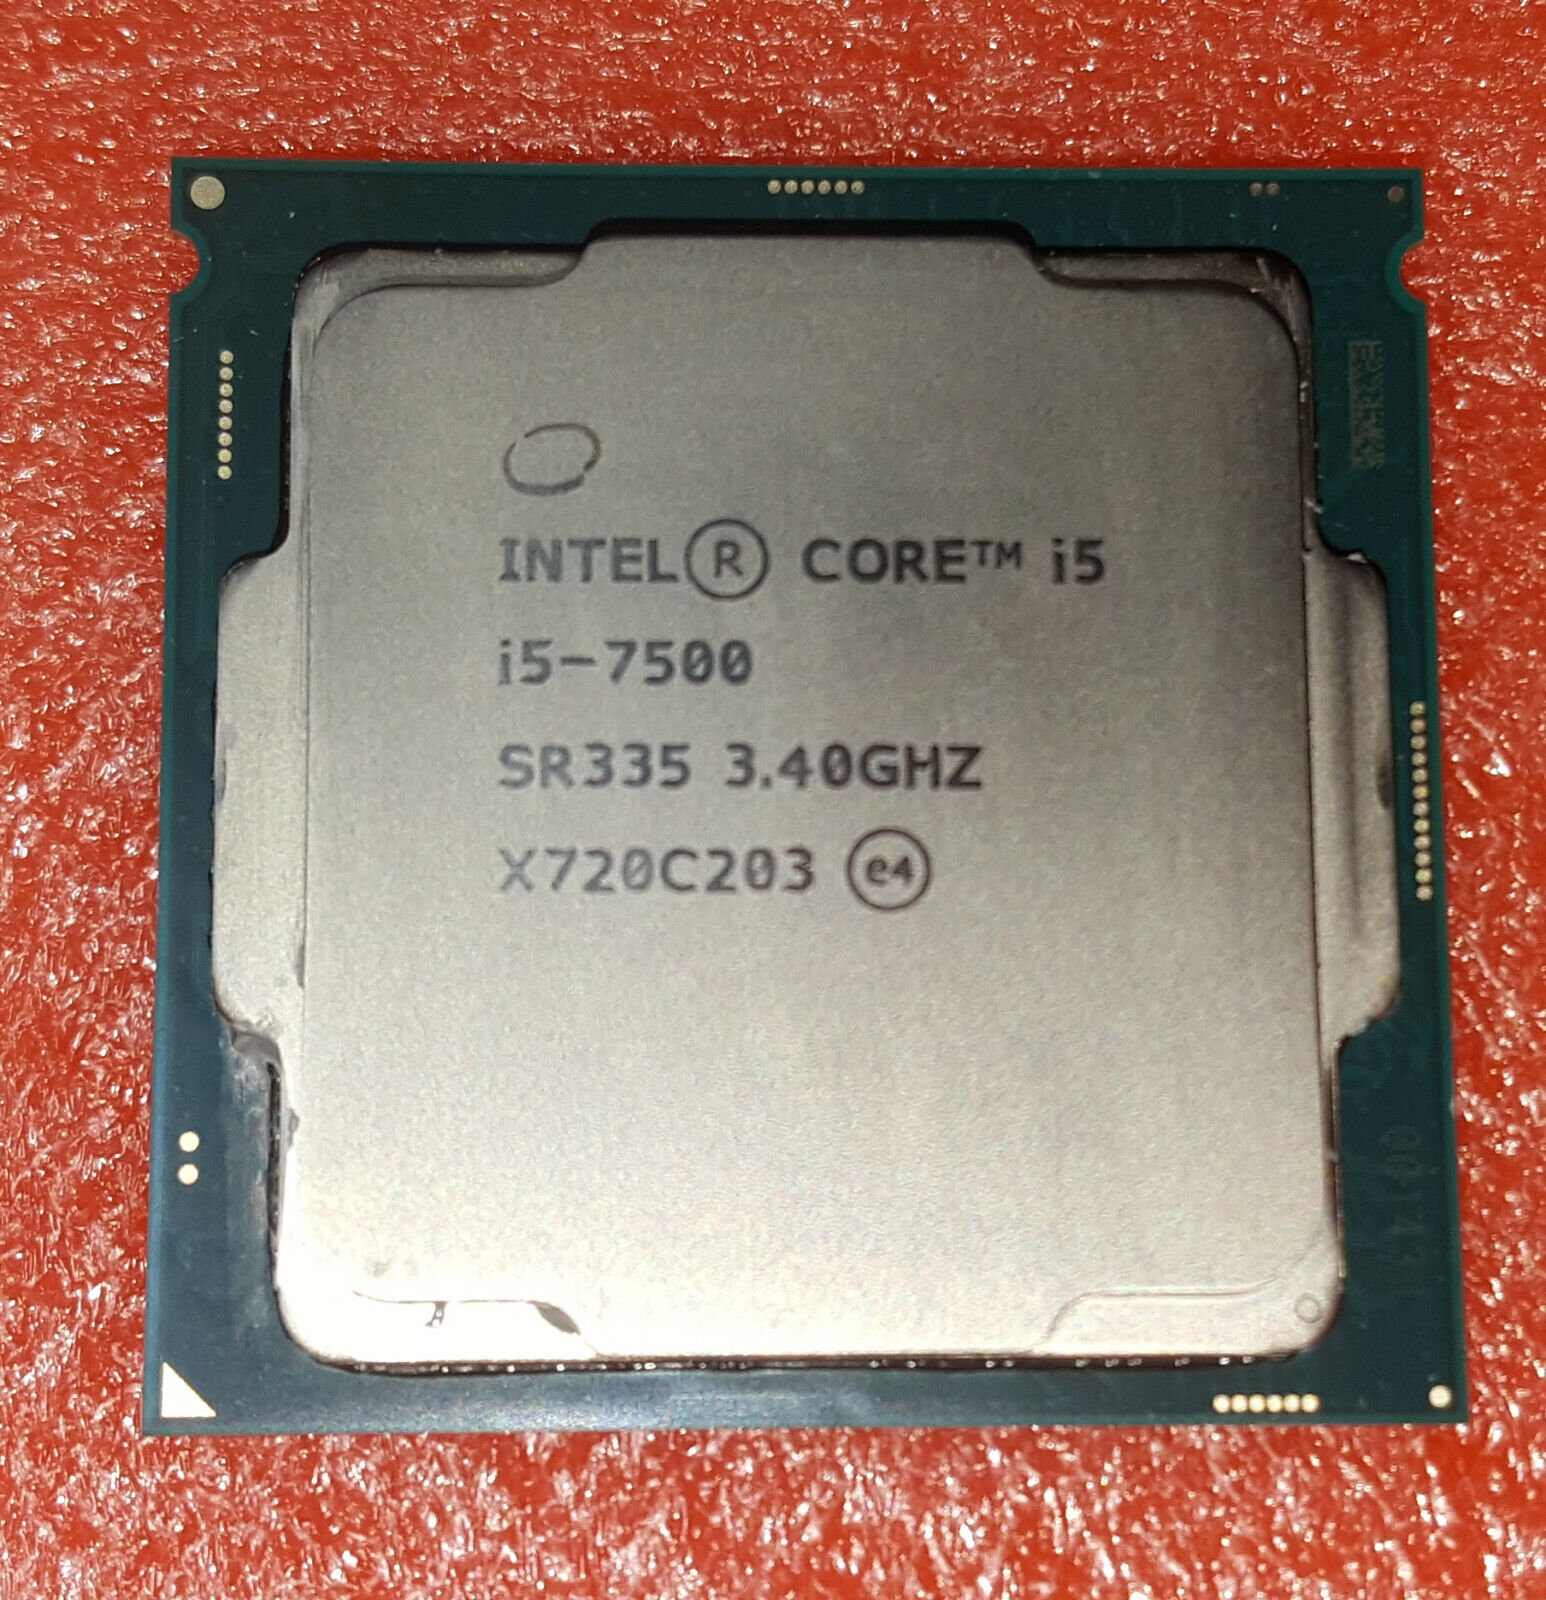 Intel Core i5-7500 SR335 3.4GHz Quad Core LGA 1151 CPU Processor for